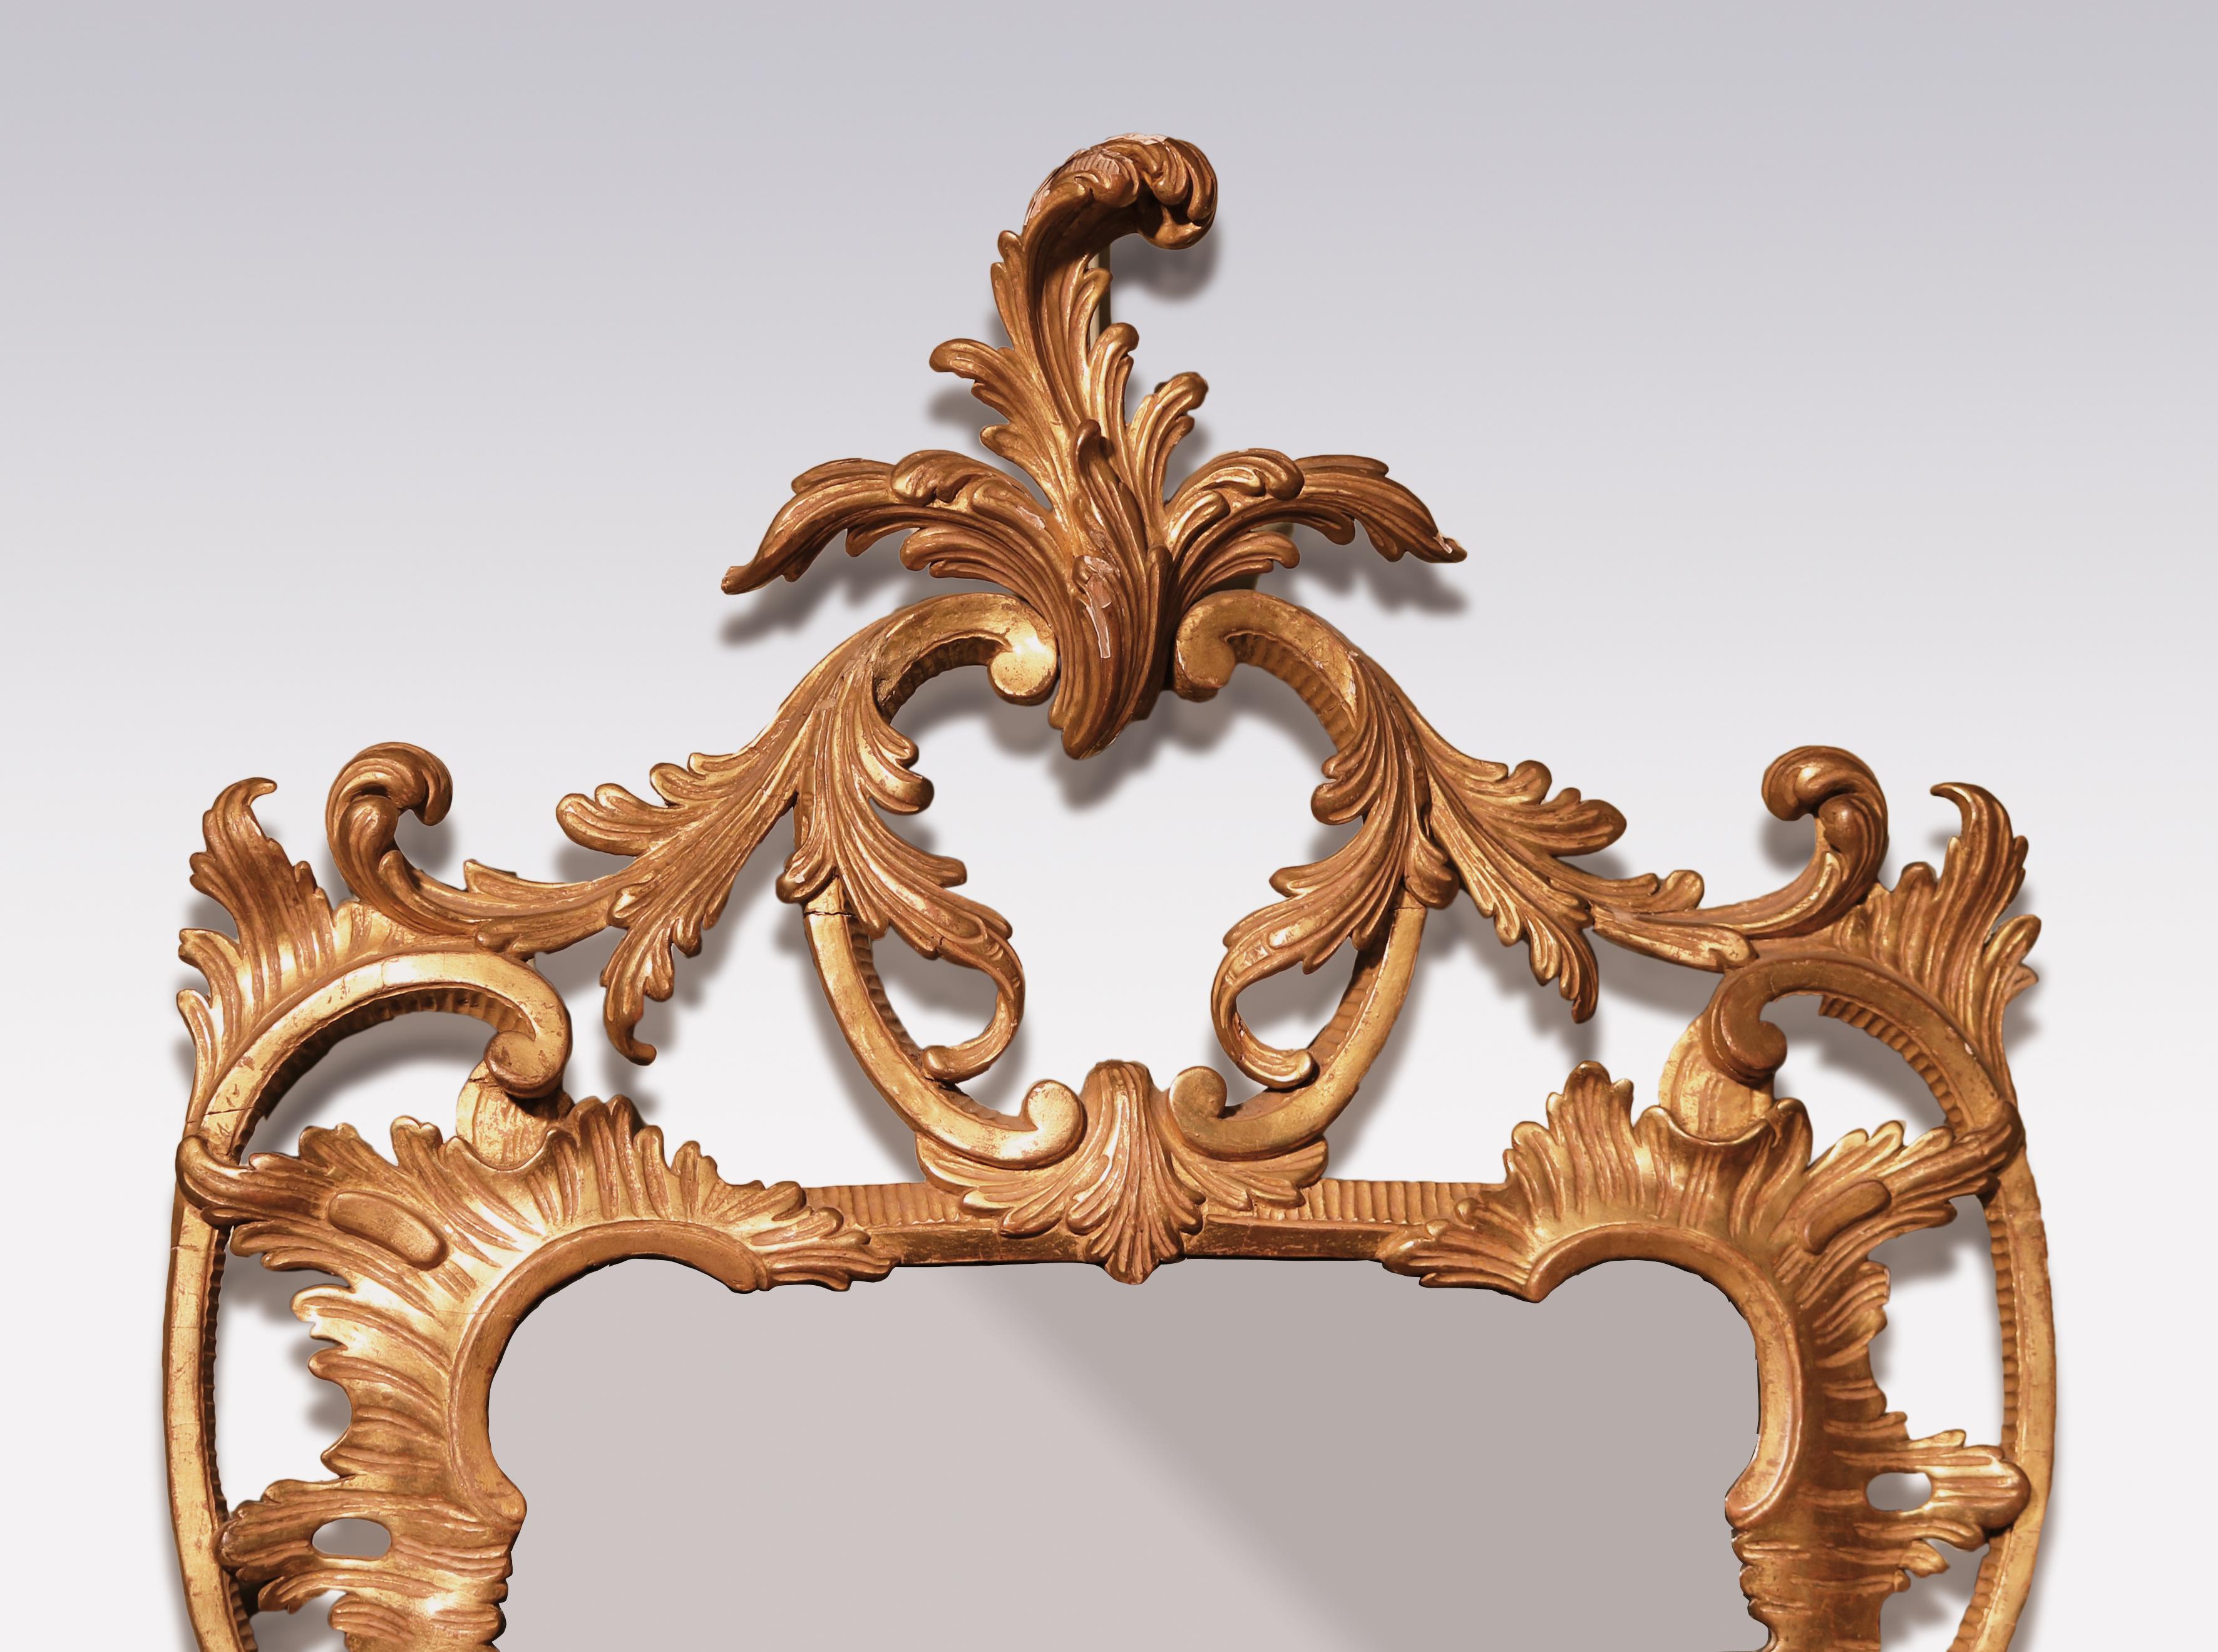 Eine feine Qualität Mitte des 18. Jahrhunderts Chippendale Periode geschnitzt Goldholz Spiegel, mit Blatt gescrollt Kartusche über geformten Rahmen von Obst und Blumen flankiert Grenzen mit durchbohrten 